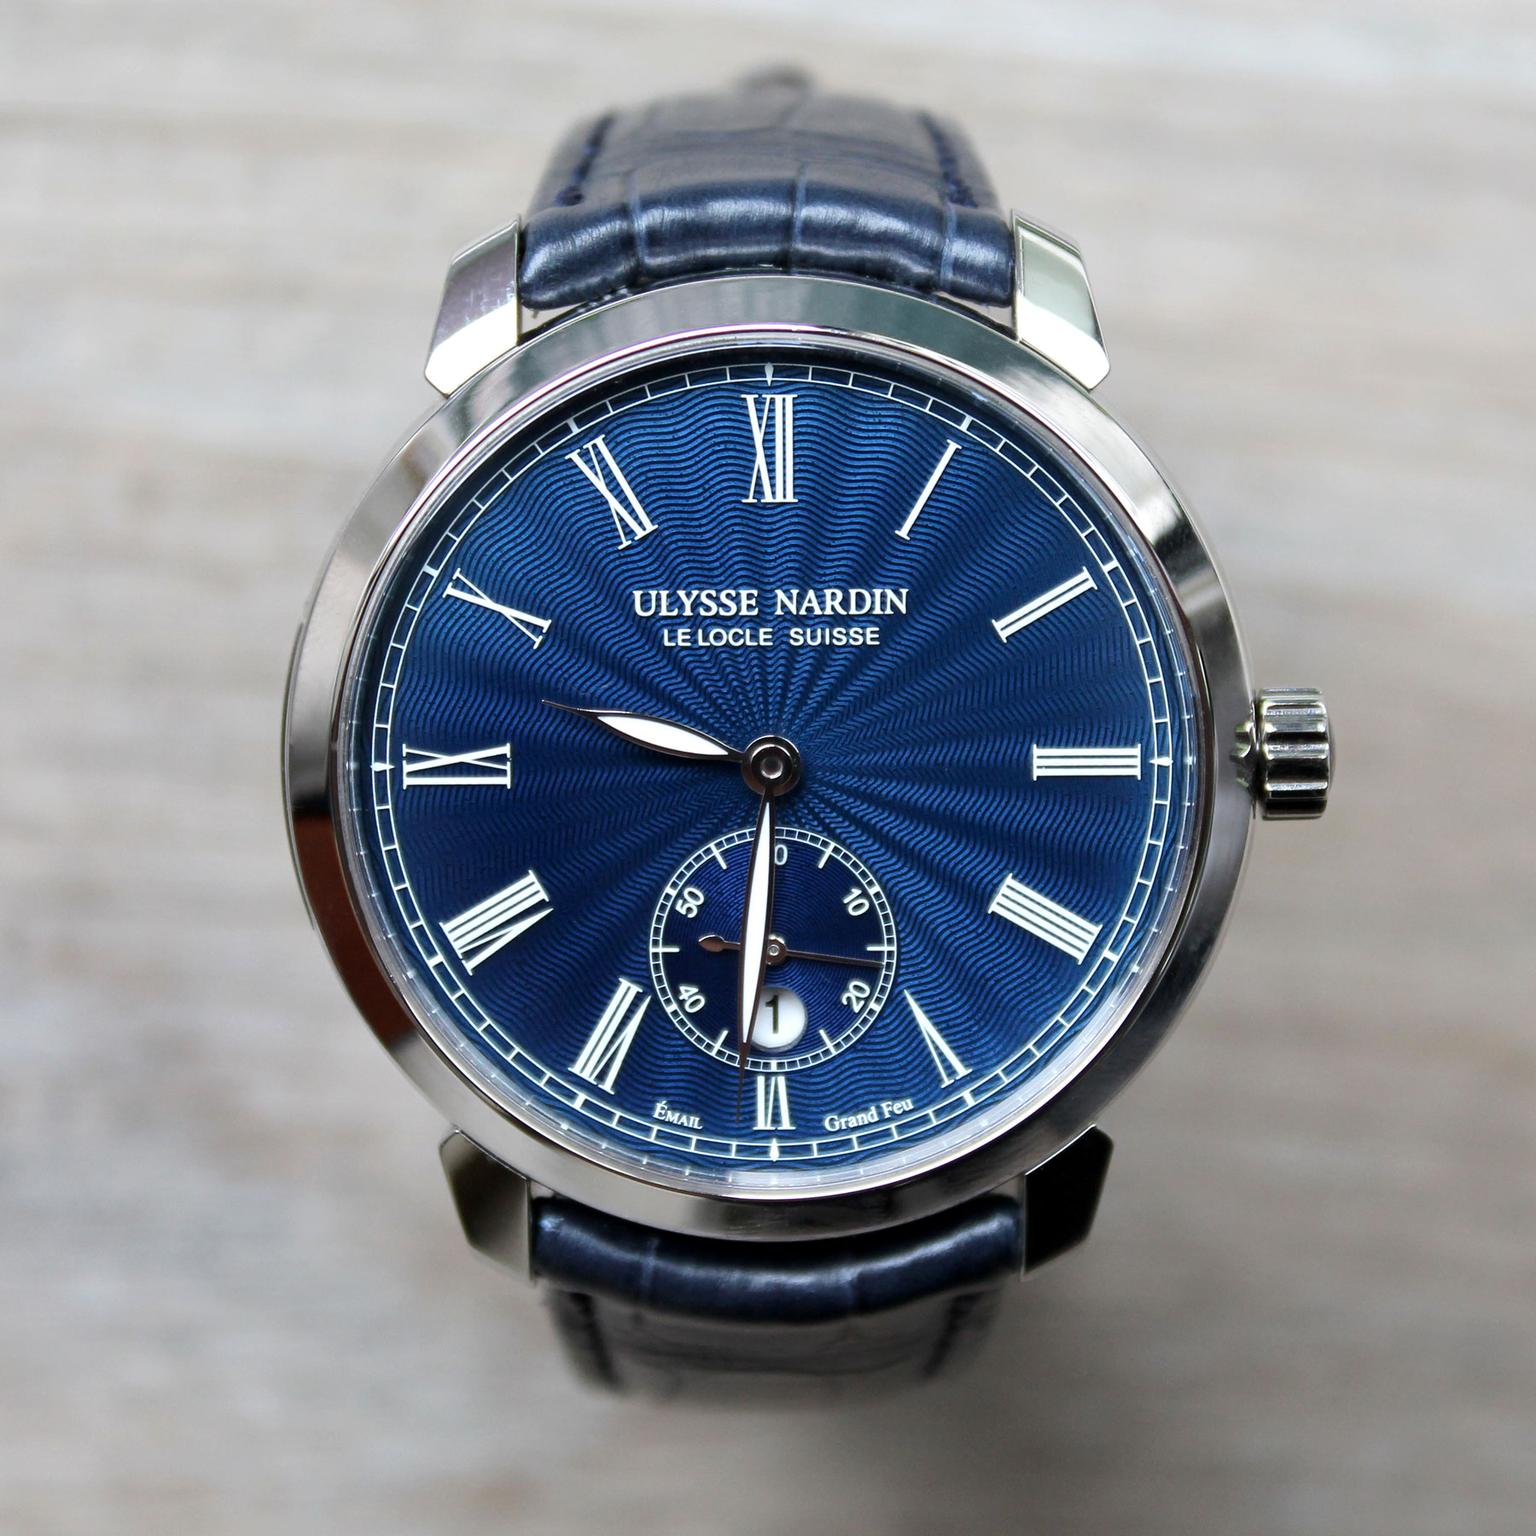 Ulysse Nardin Classico Manufacture watch